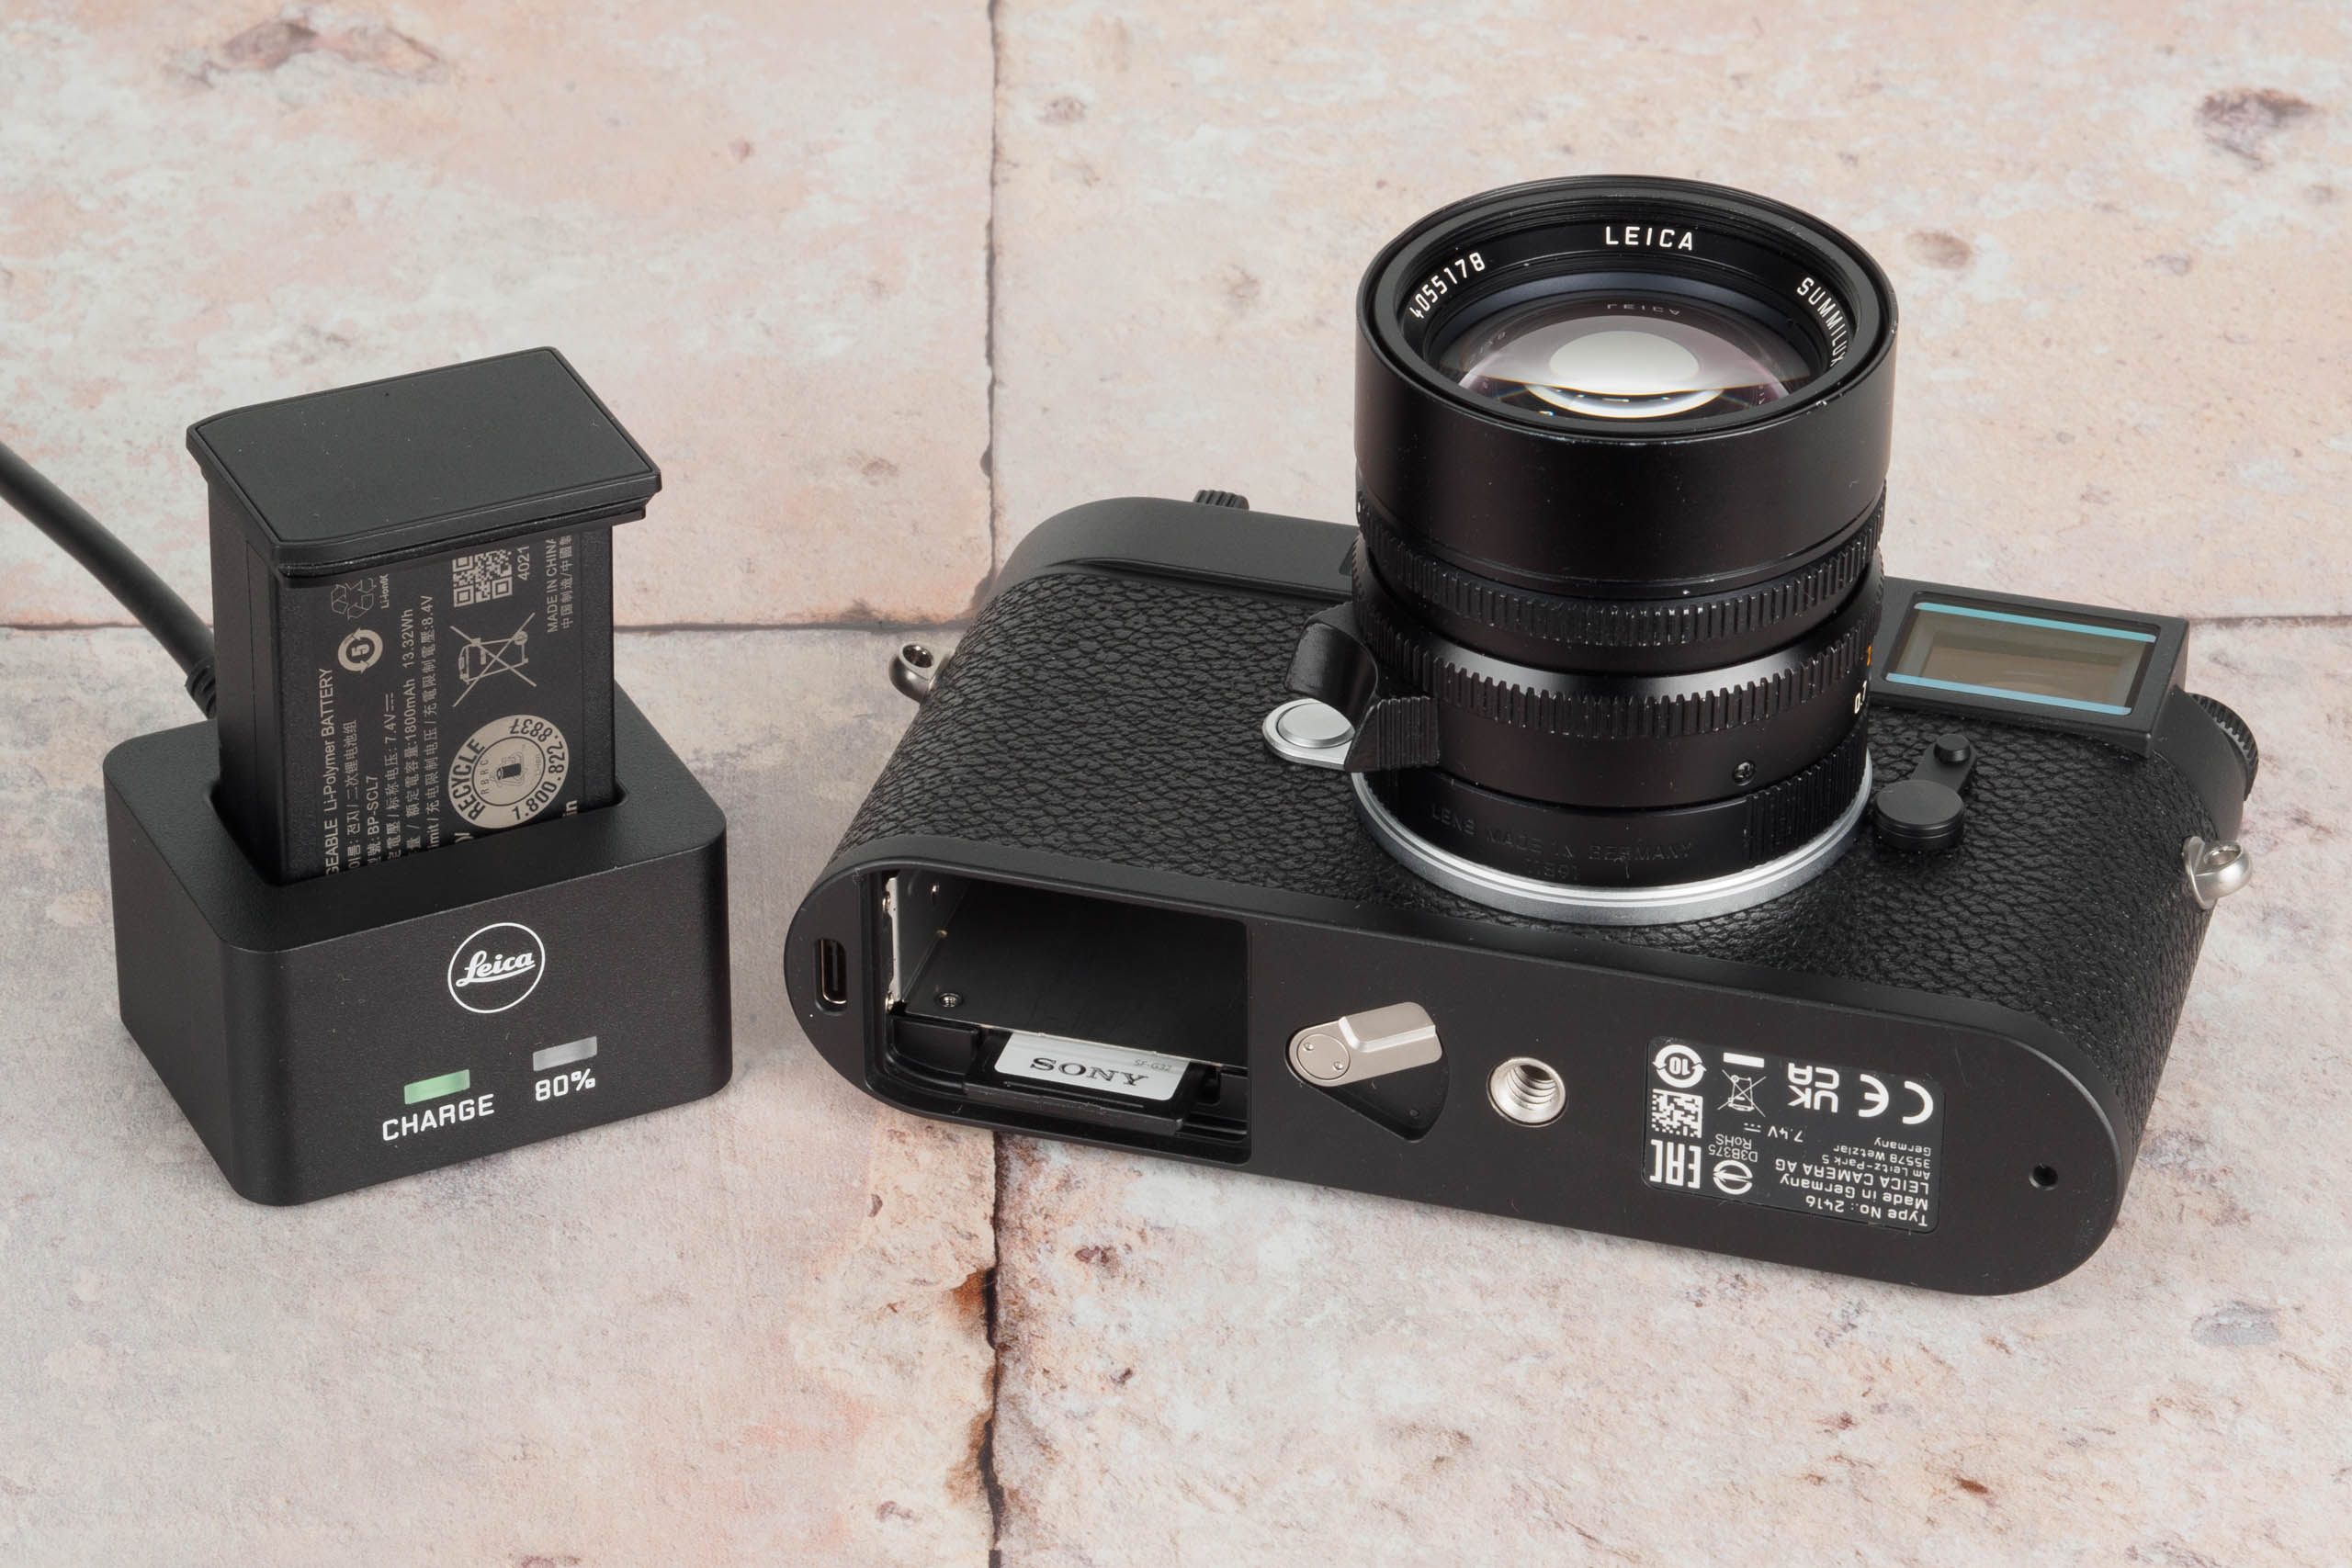 Leica M11 external battery charger